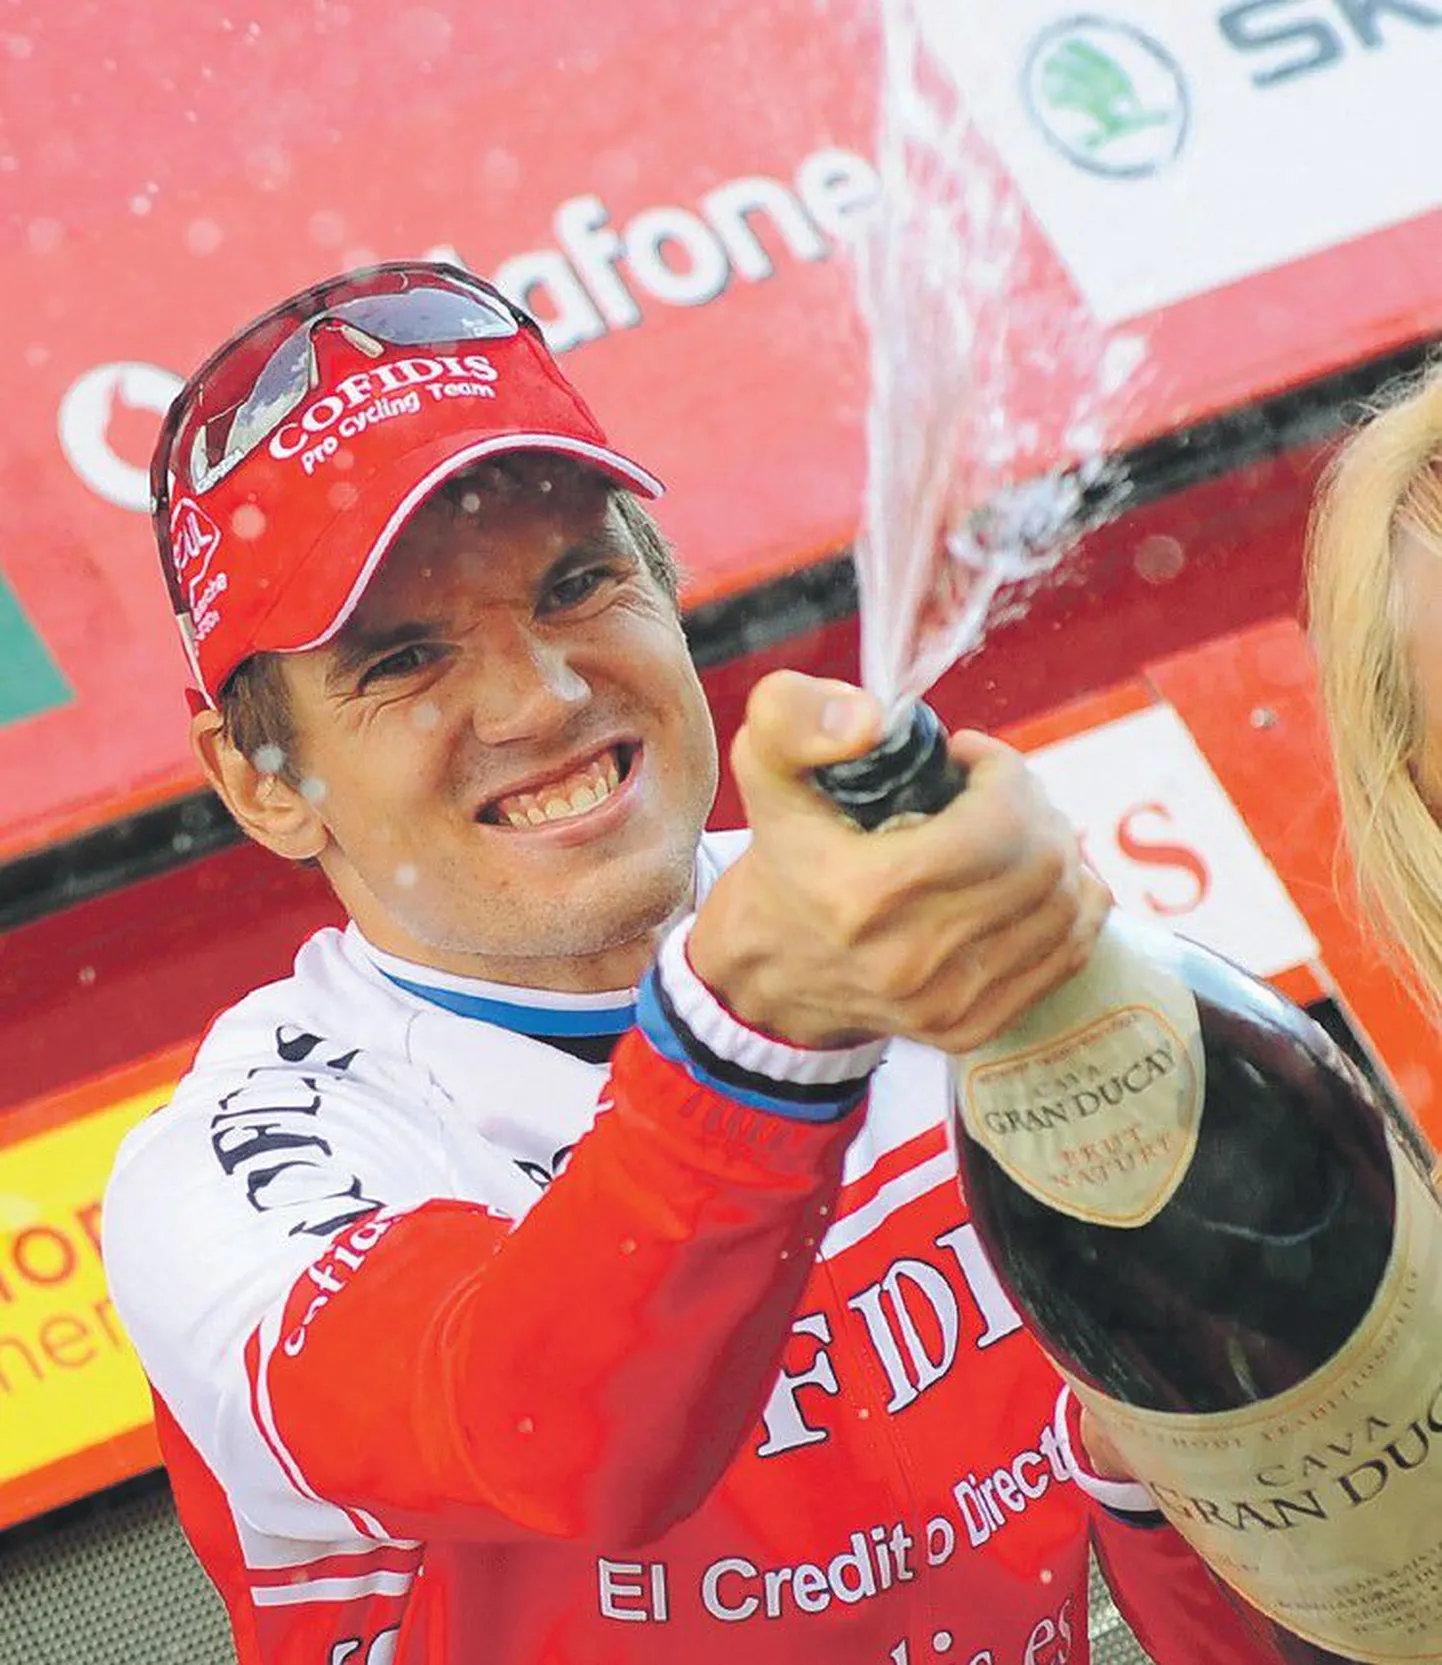 Один из лучших эстонских велогонщиков Рейн Таарамяэ, одержавший победу на сложнейшем 14-м этапе многодневки «Вуэльта Испании», праздновал свой успех: замечательный повод откупорить бутылку шампанского есть у всех поклонников велоспорта.